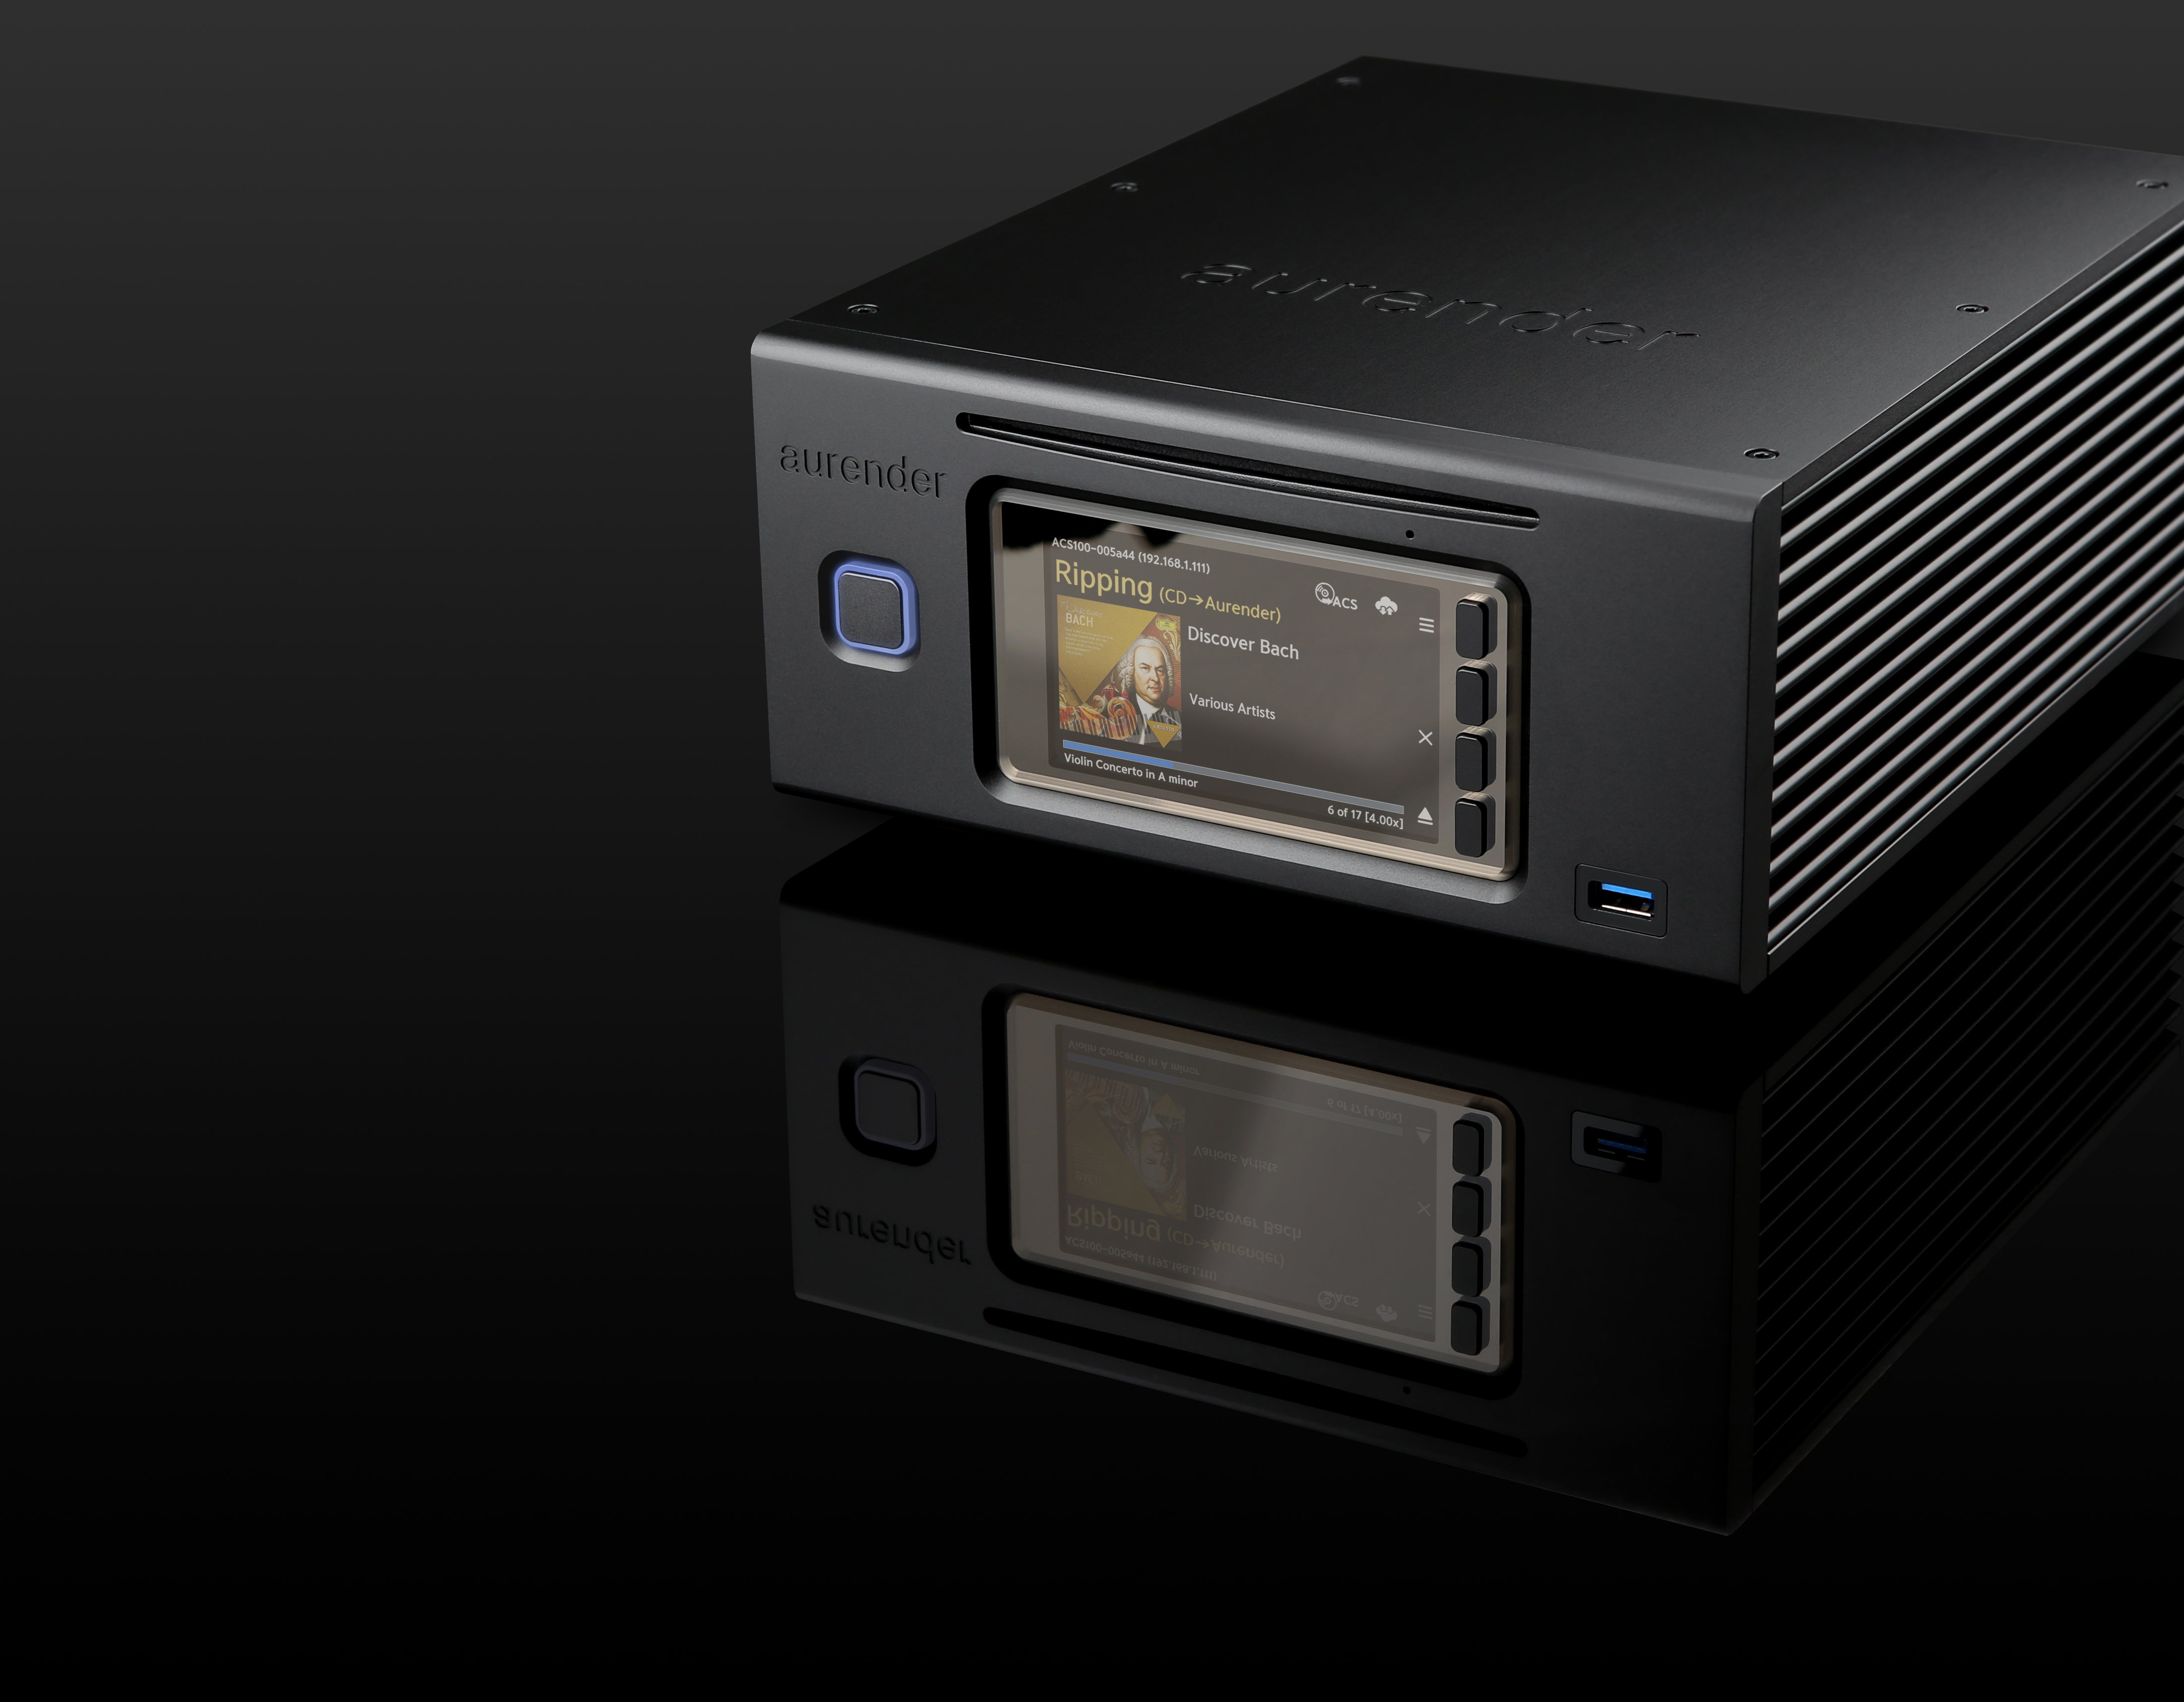 Douglas HiFi - Aurender ACS100 Caching Music Server Streamer - Black Iso Front - Osborne Park Perth